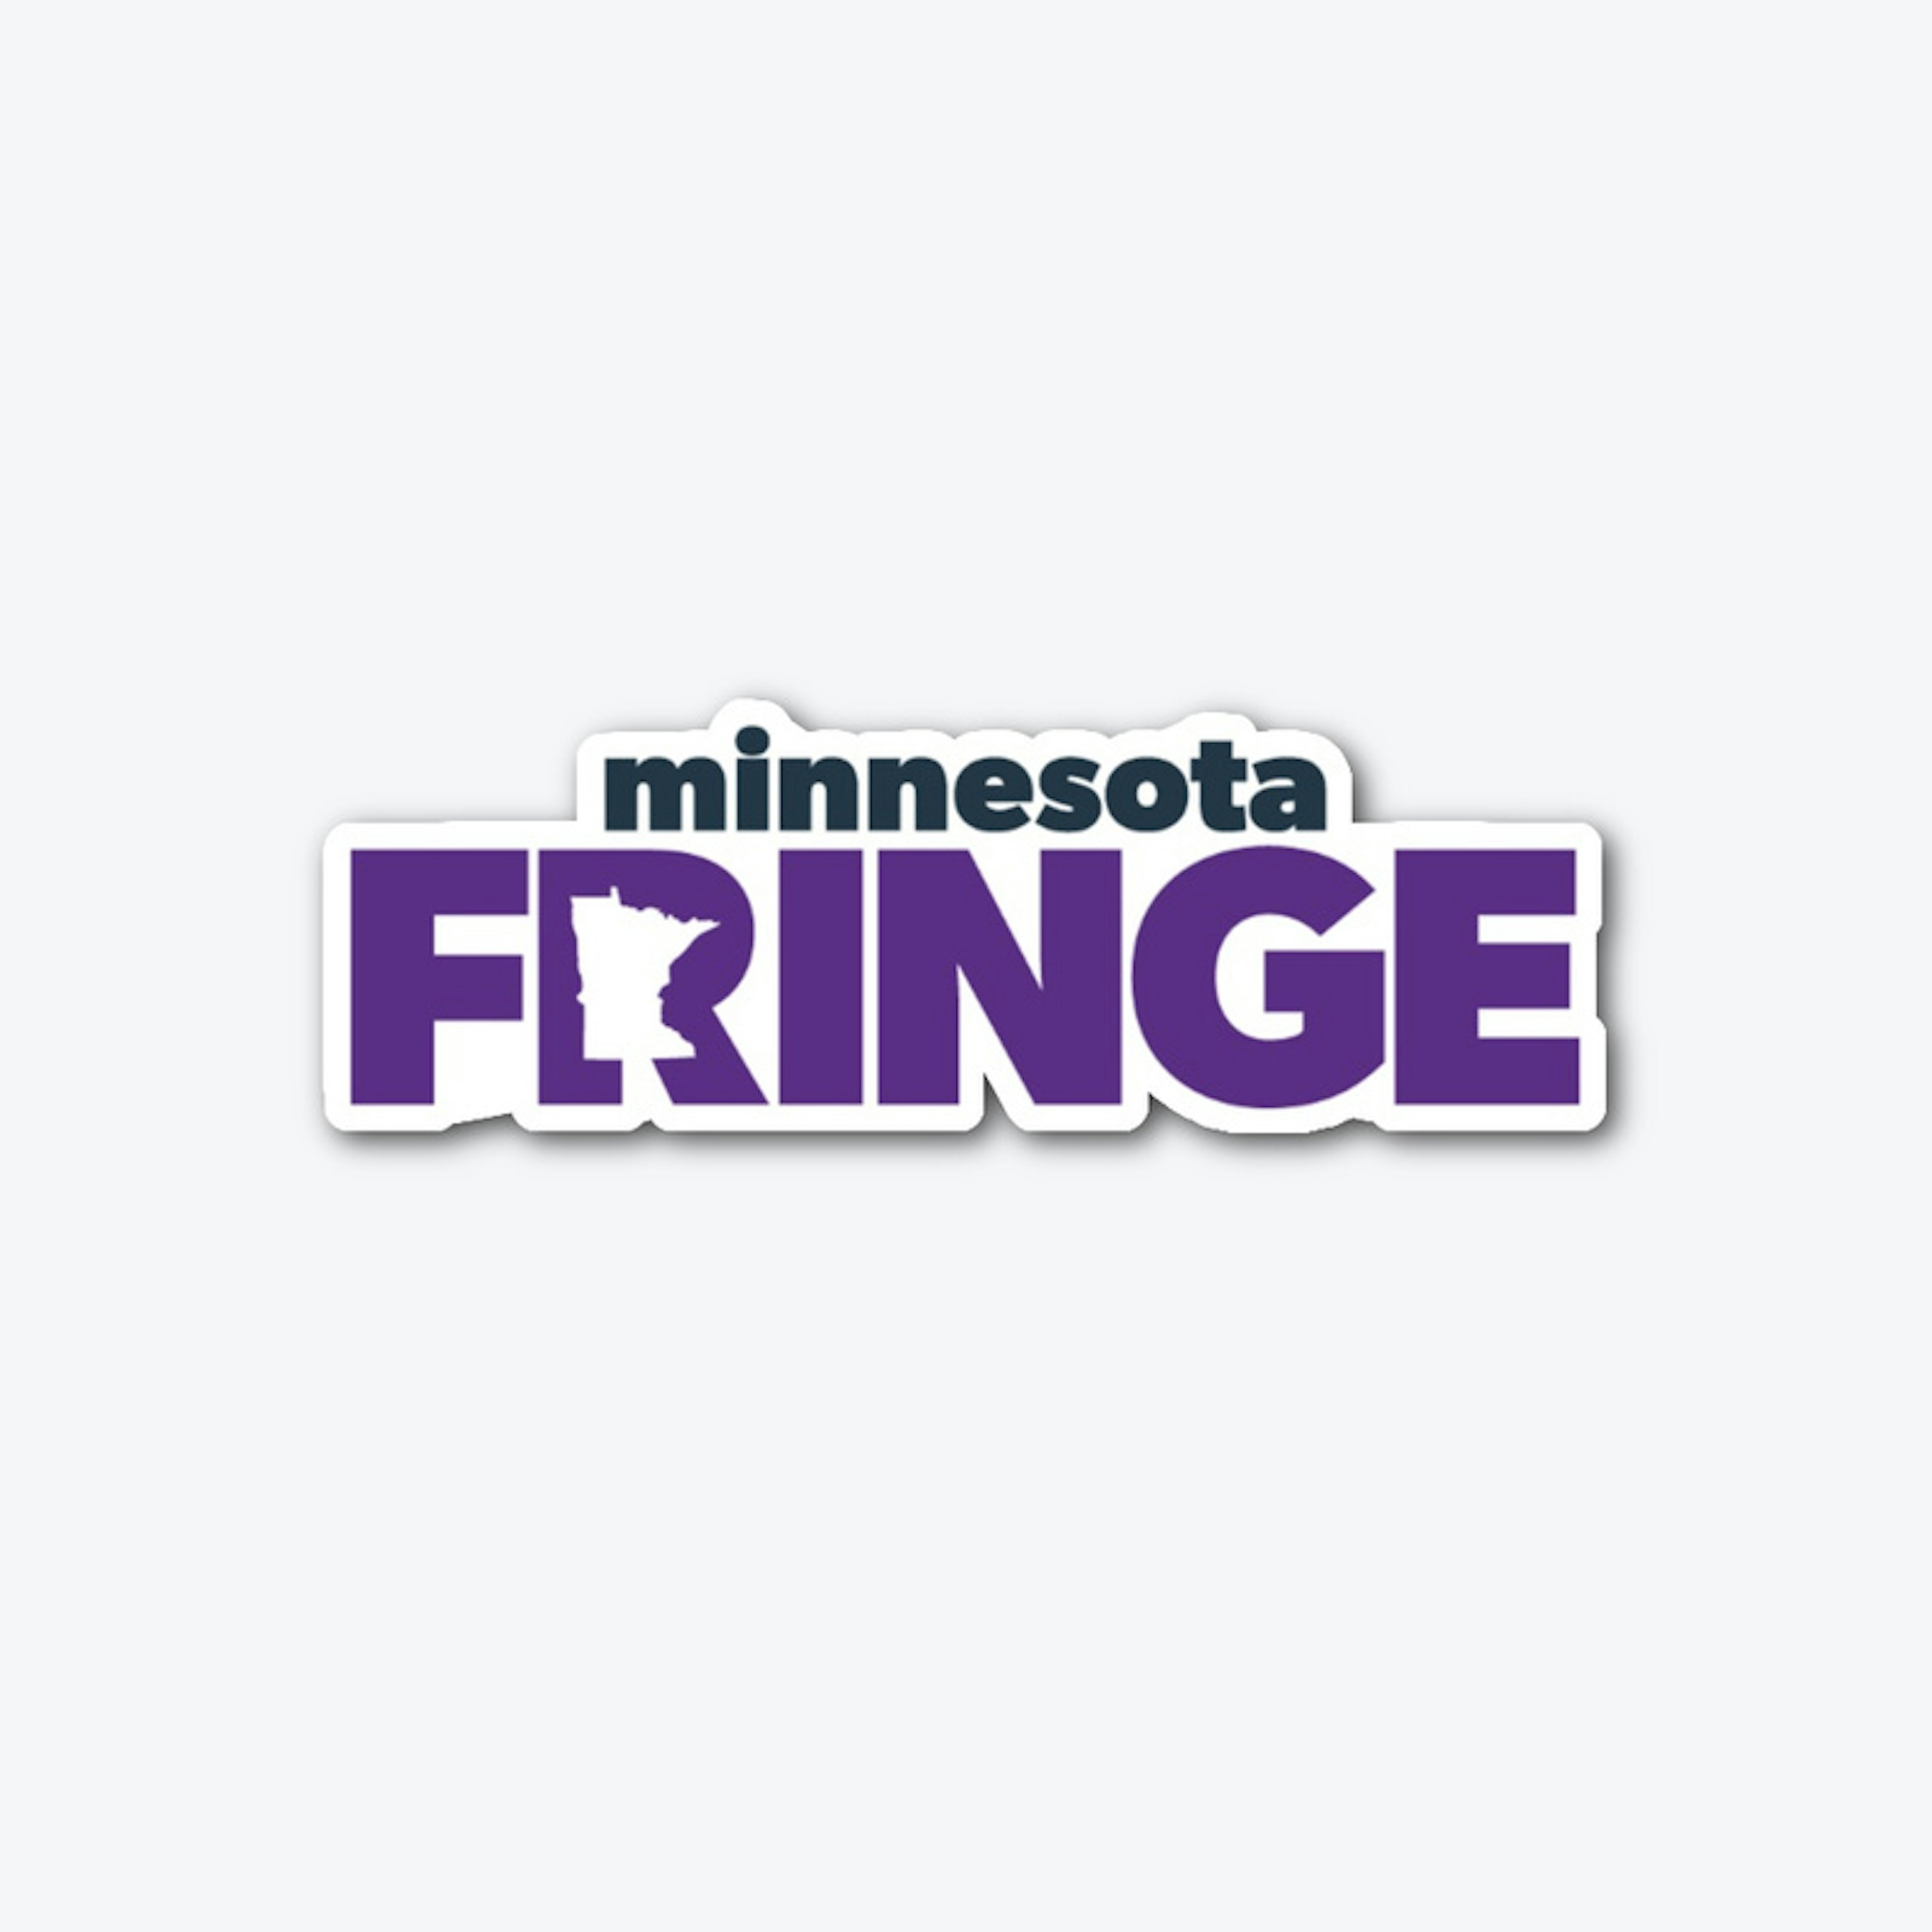 Minnesota Fringe Sticker